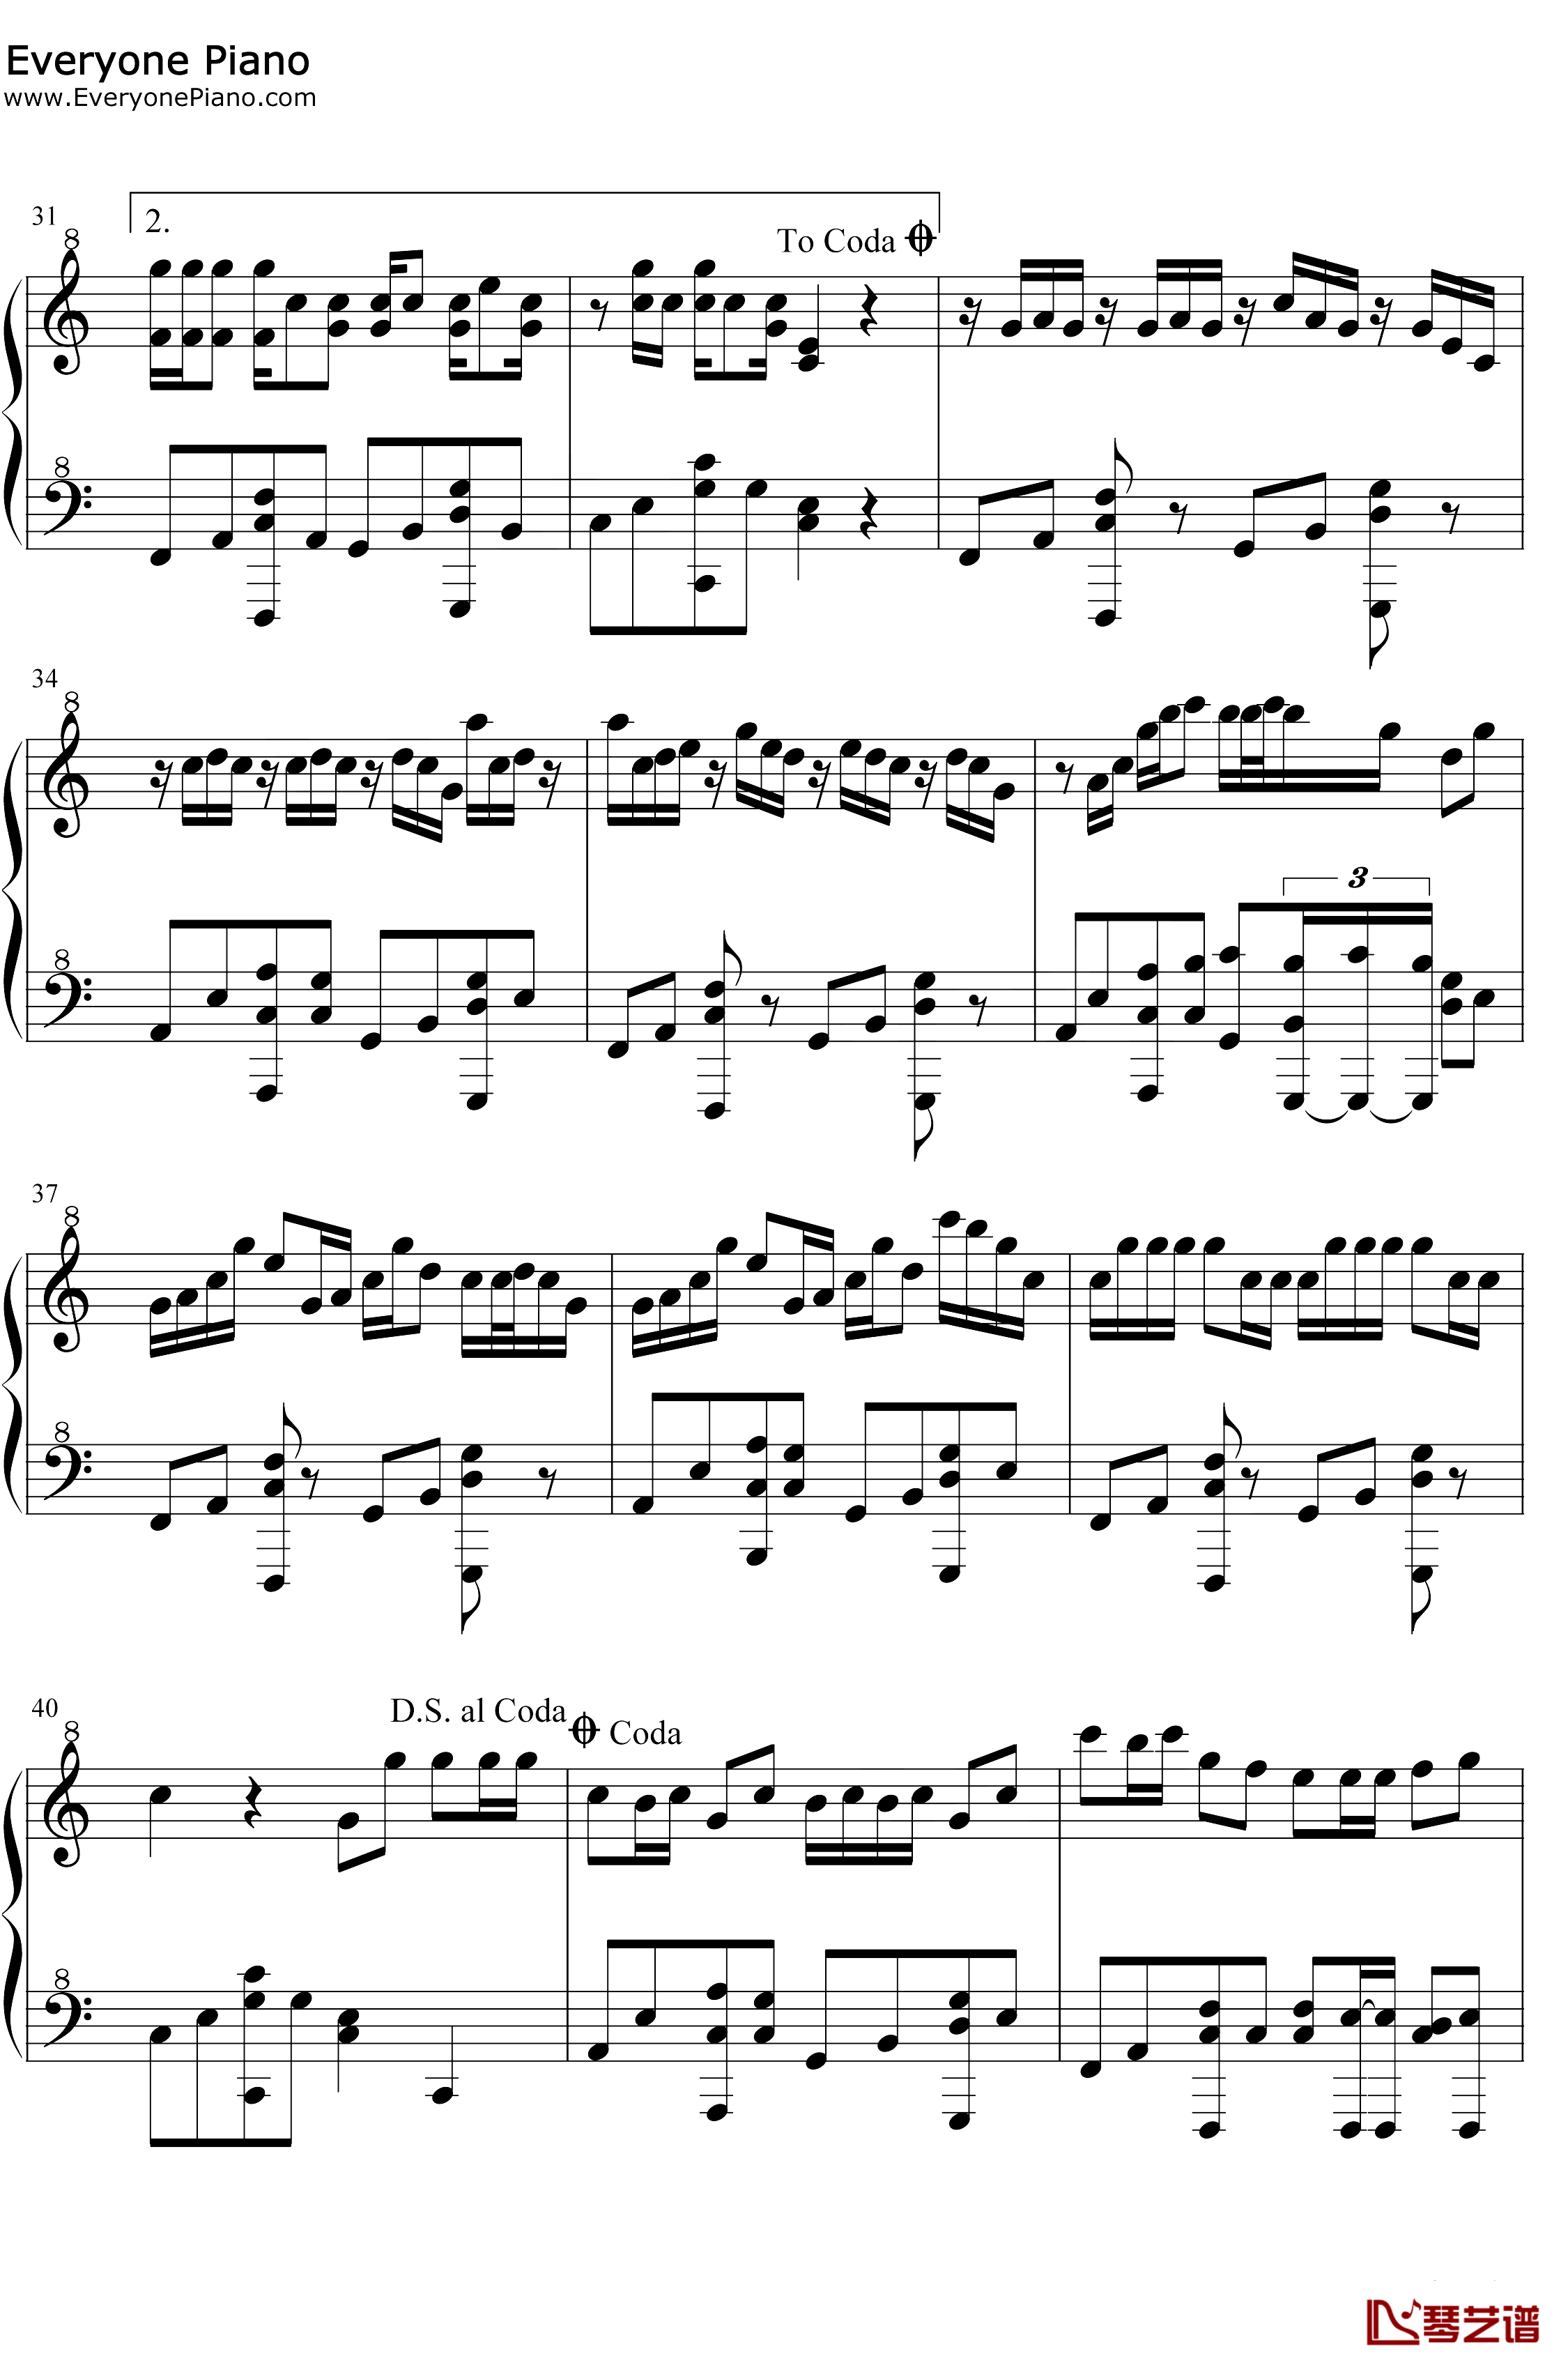 星茶会钢琴谱-灰澈-轻快的钢琴RB曲3